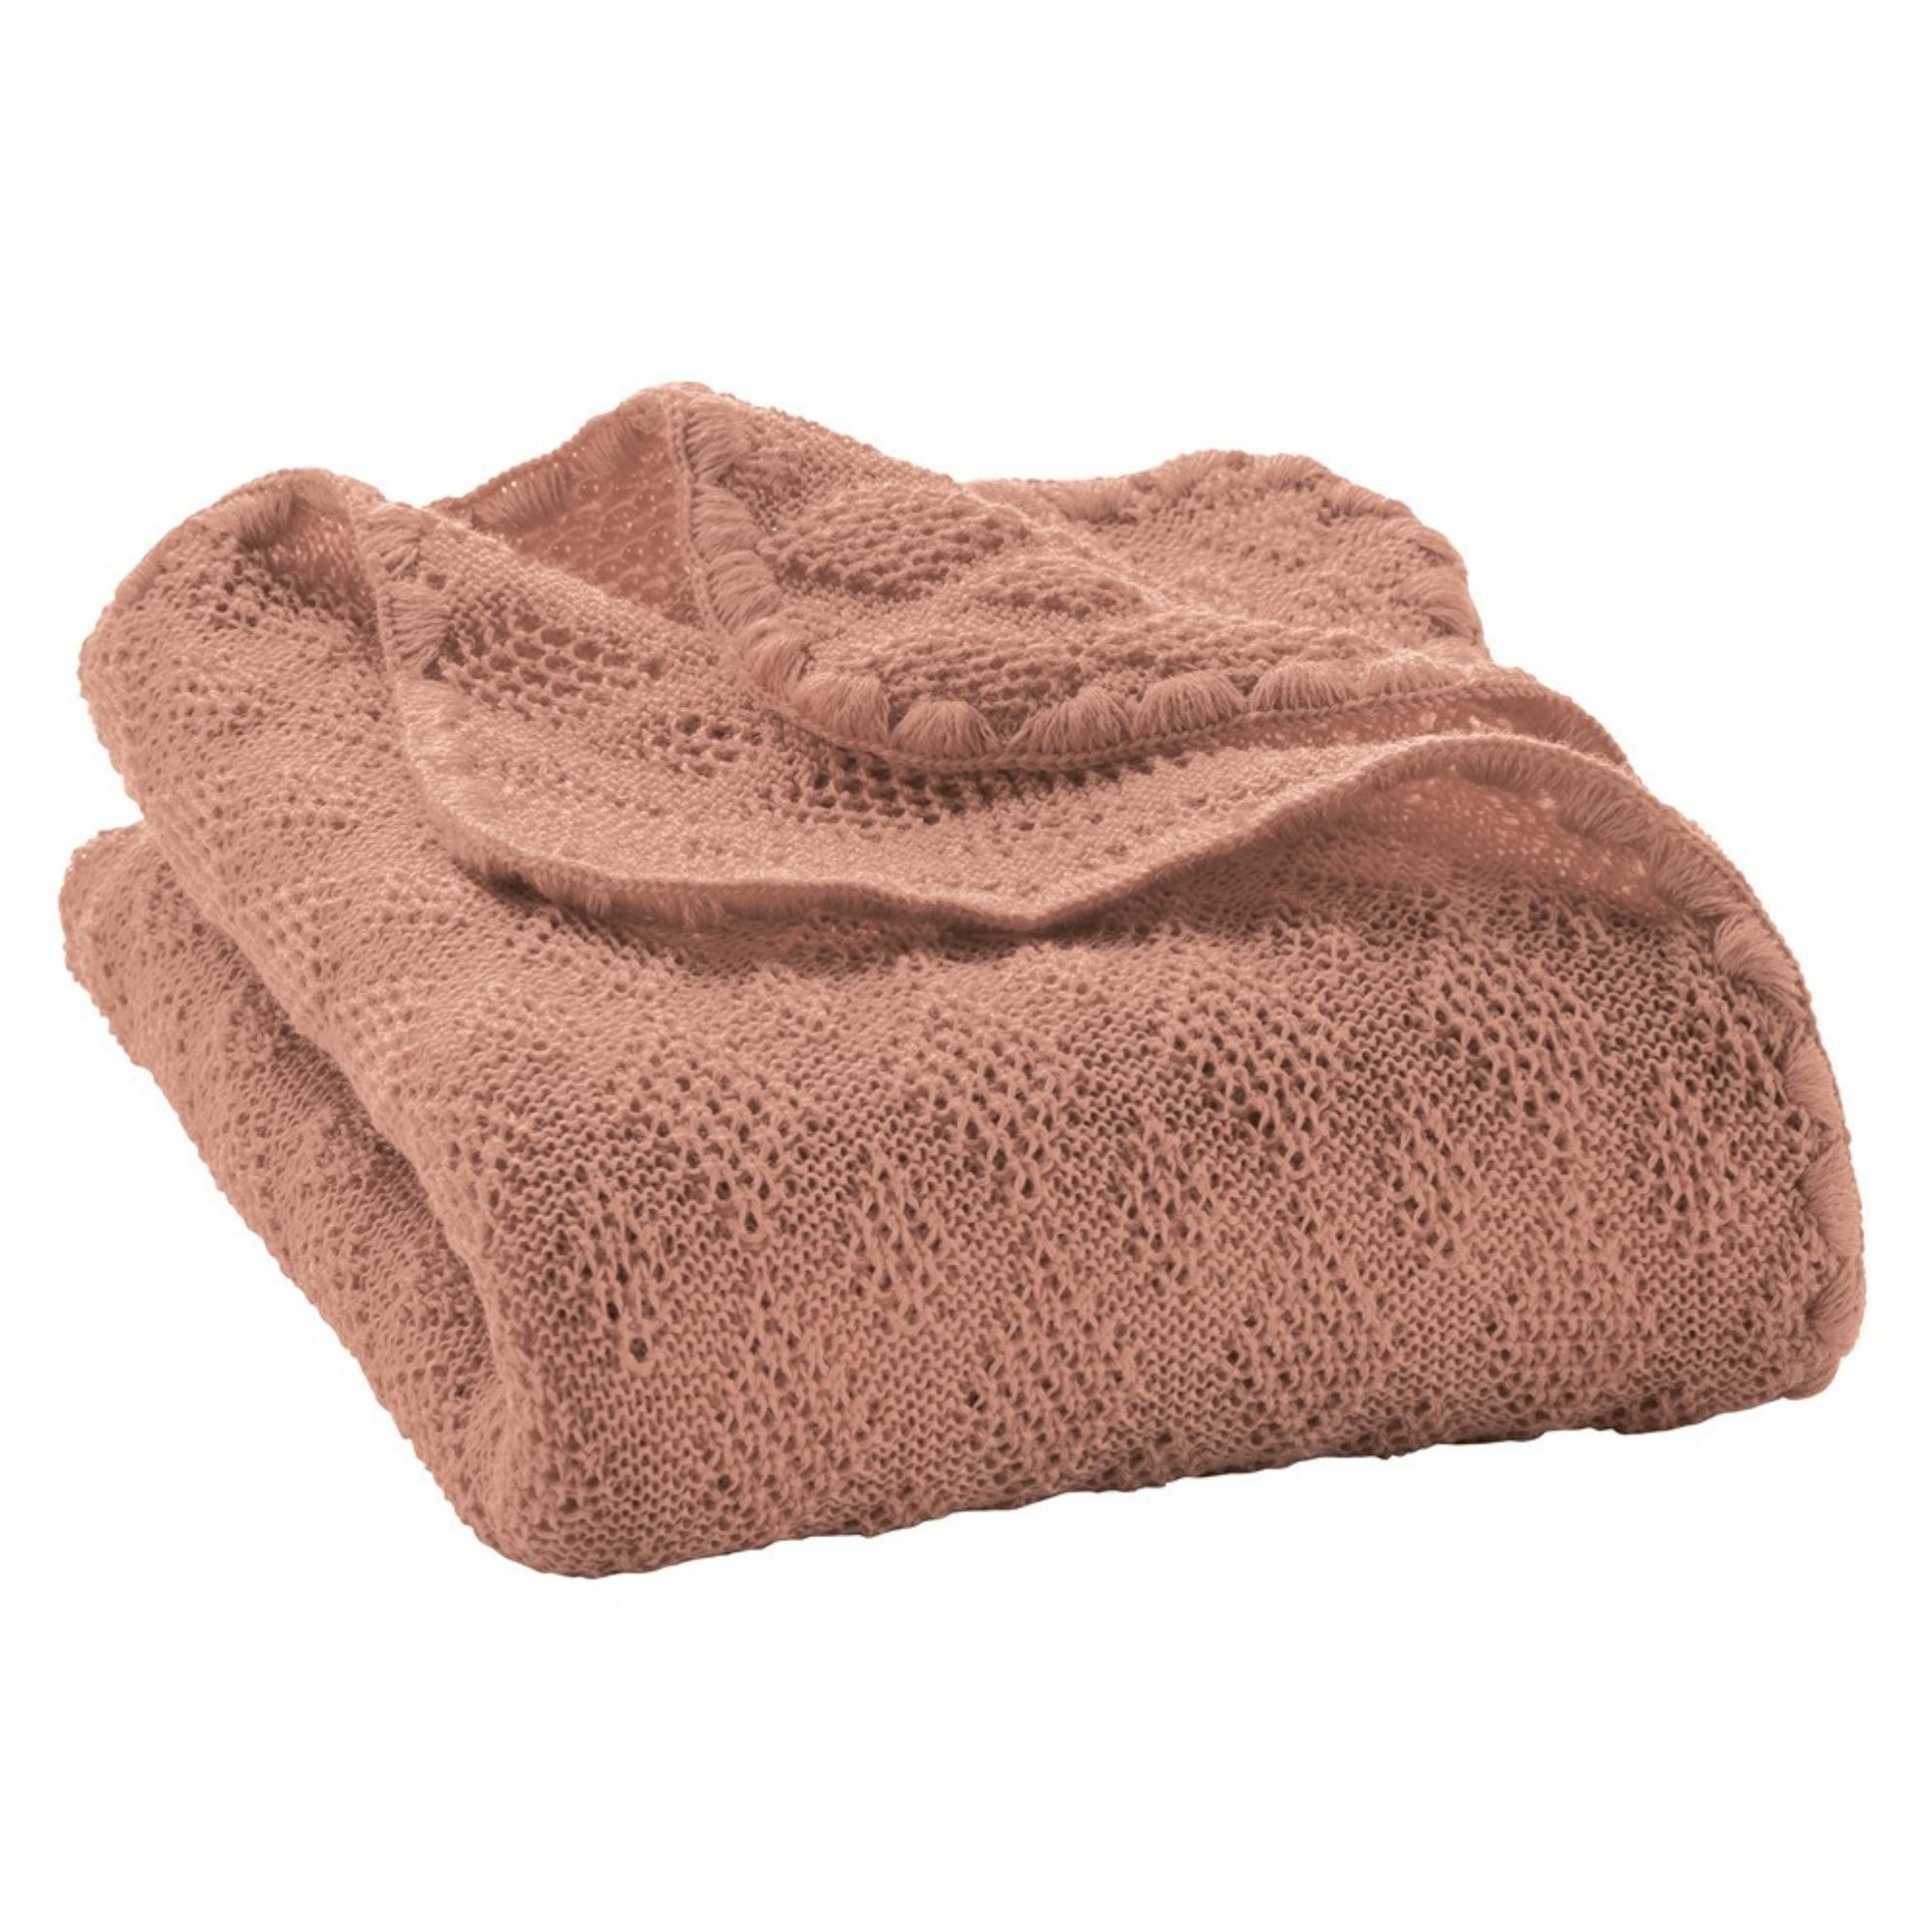 couverture-bebe-enfant-pure-laine-merinos-bio-tricotee-disana-maison-de-mamoulia-rose